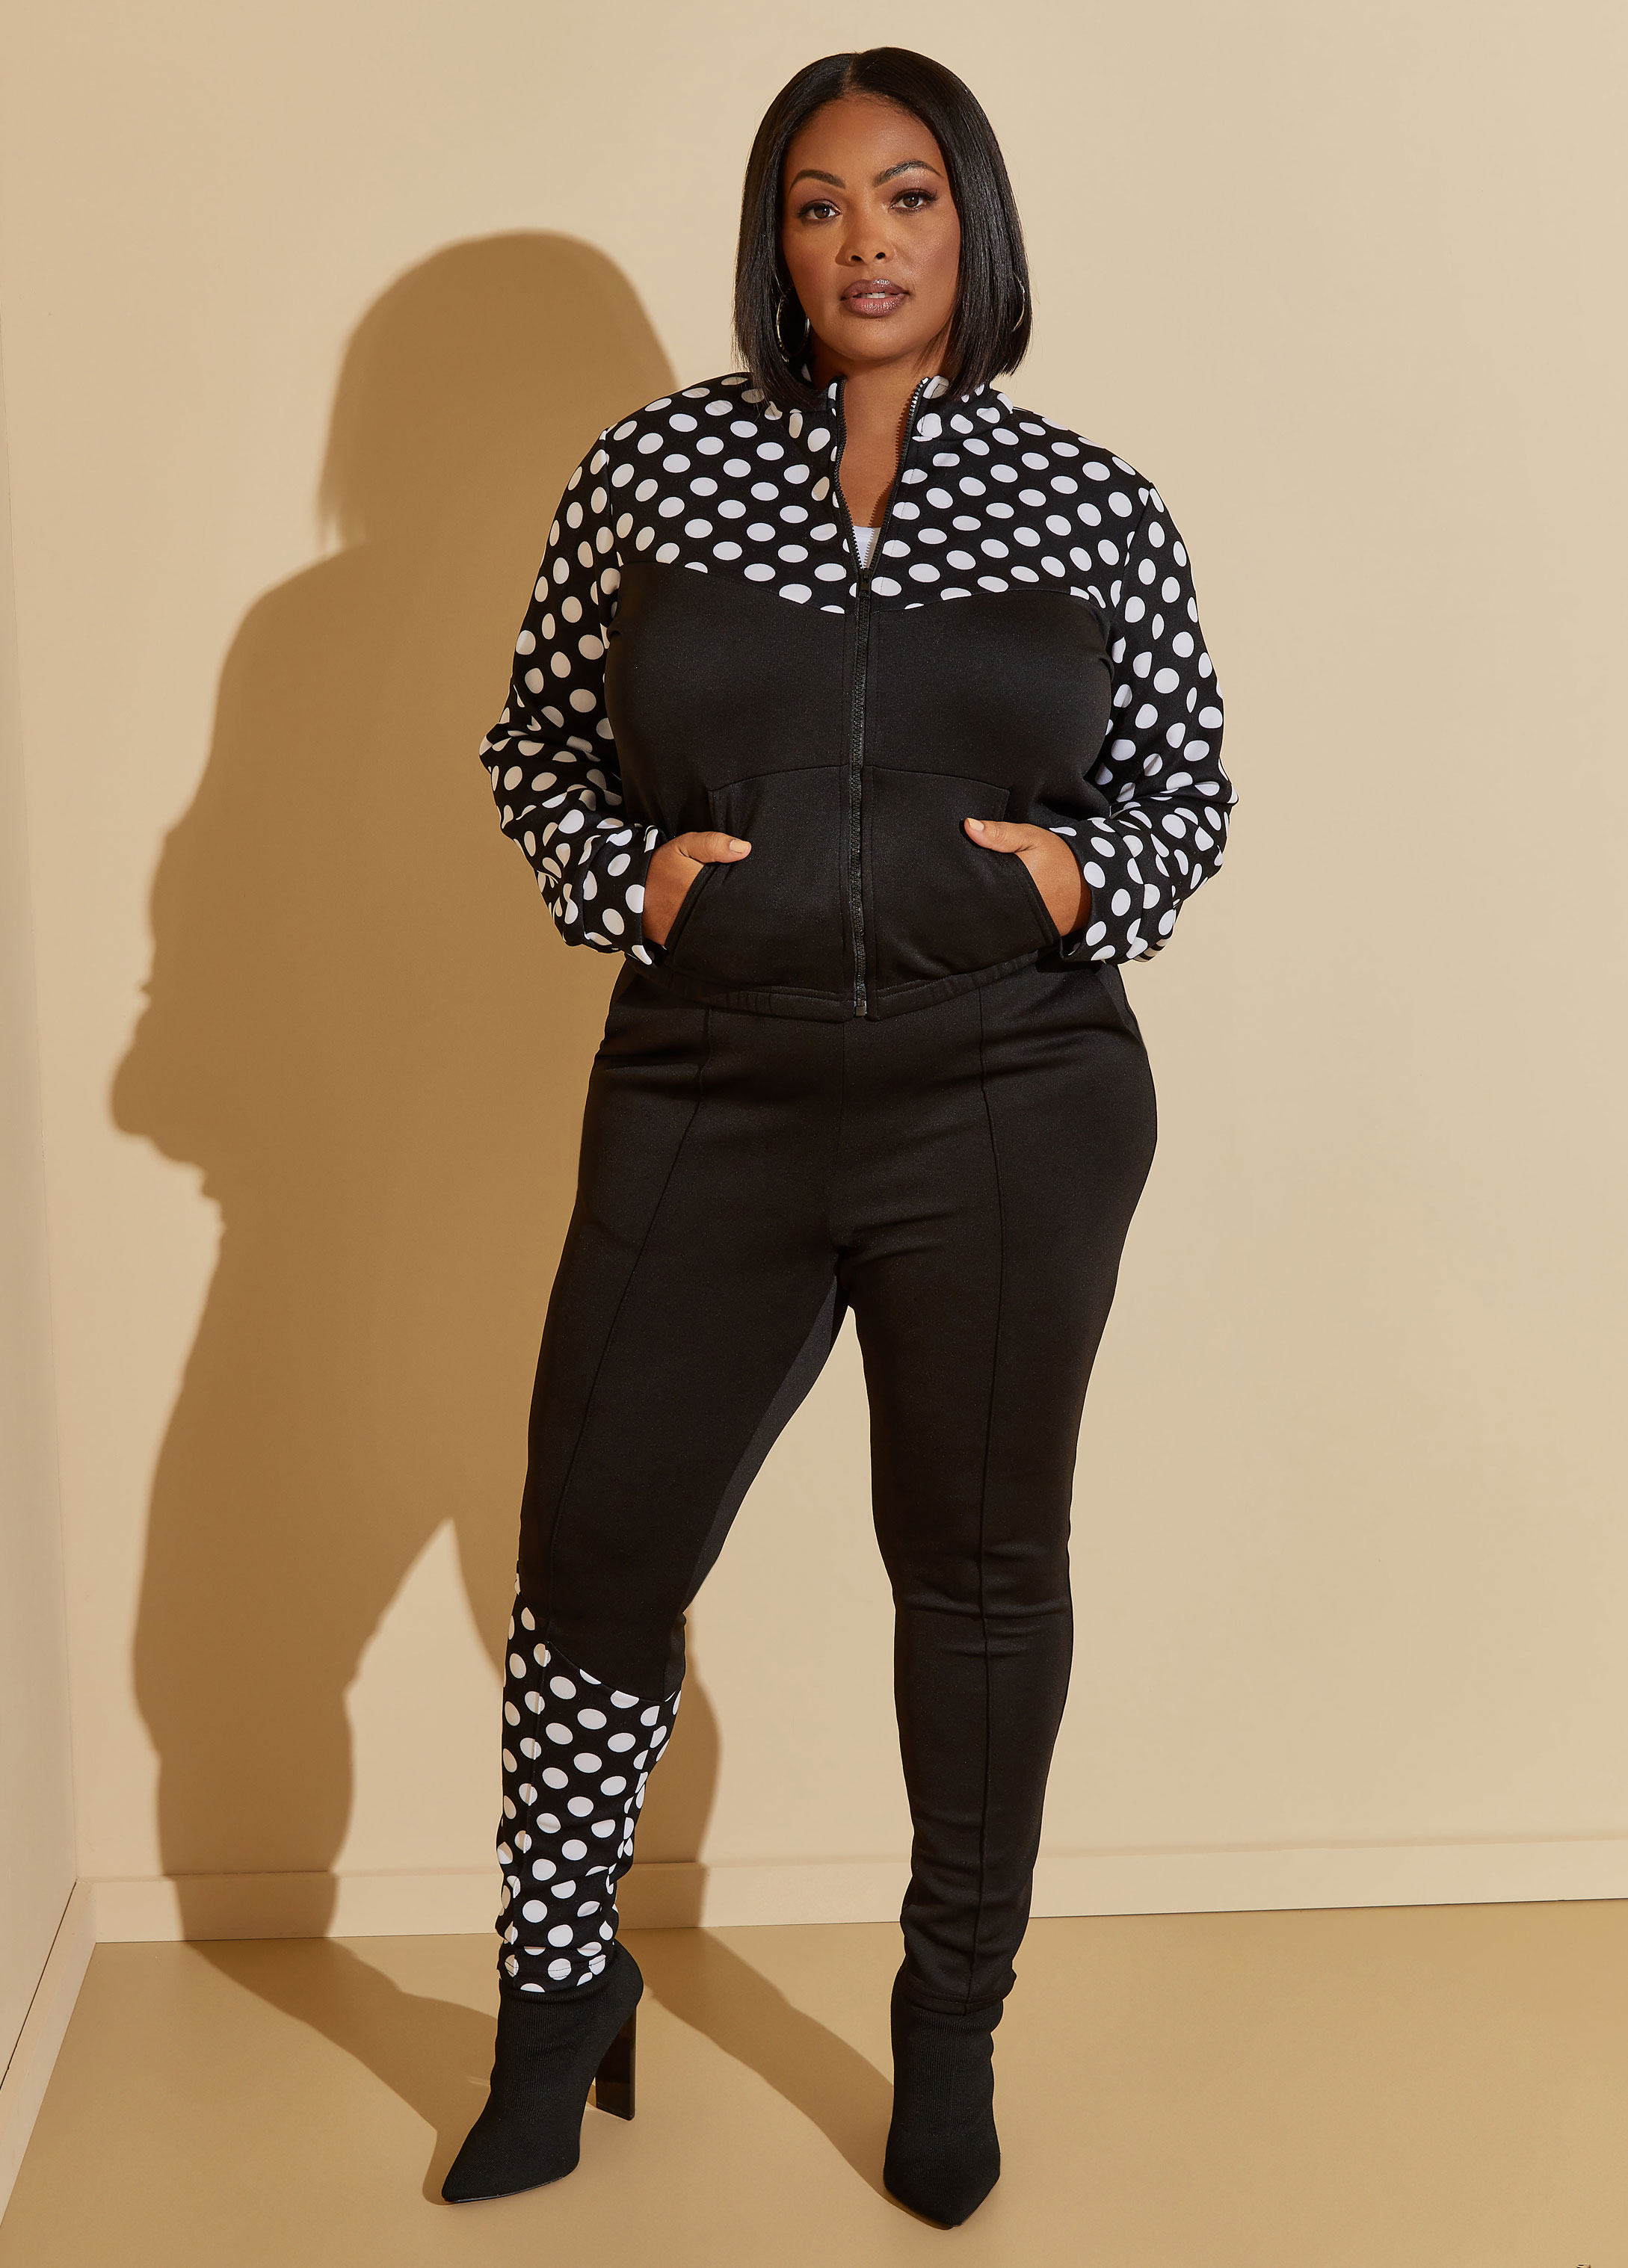 Plus Size polka dot leggings 80s 2000 fashion Y2K Streetwear Sets